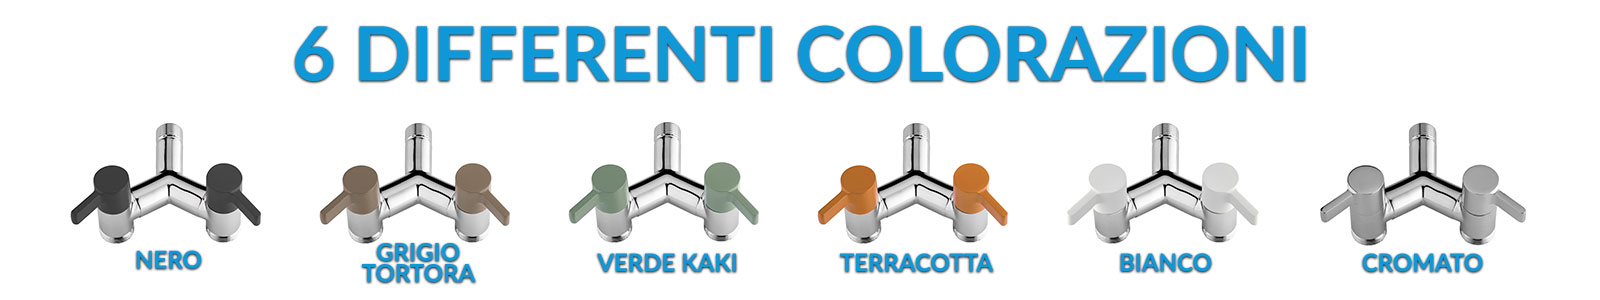 colorazioni rubinetti per il giardino Eco tap double Y Aquapoint 